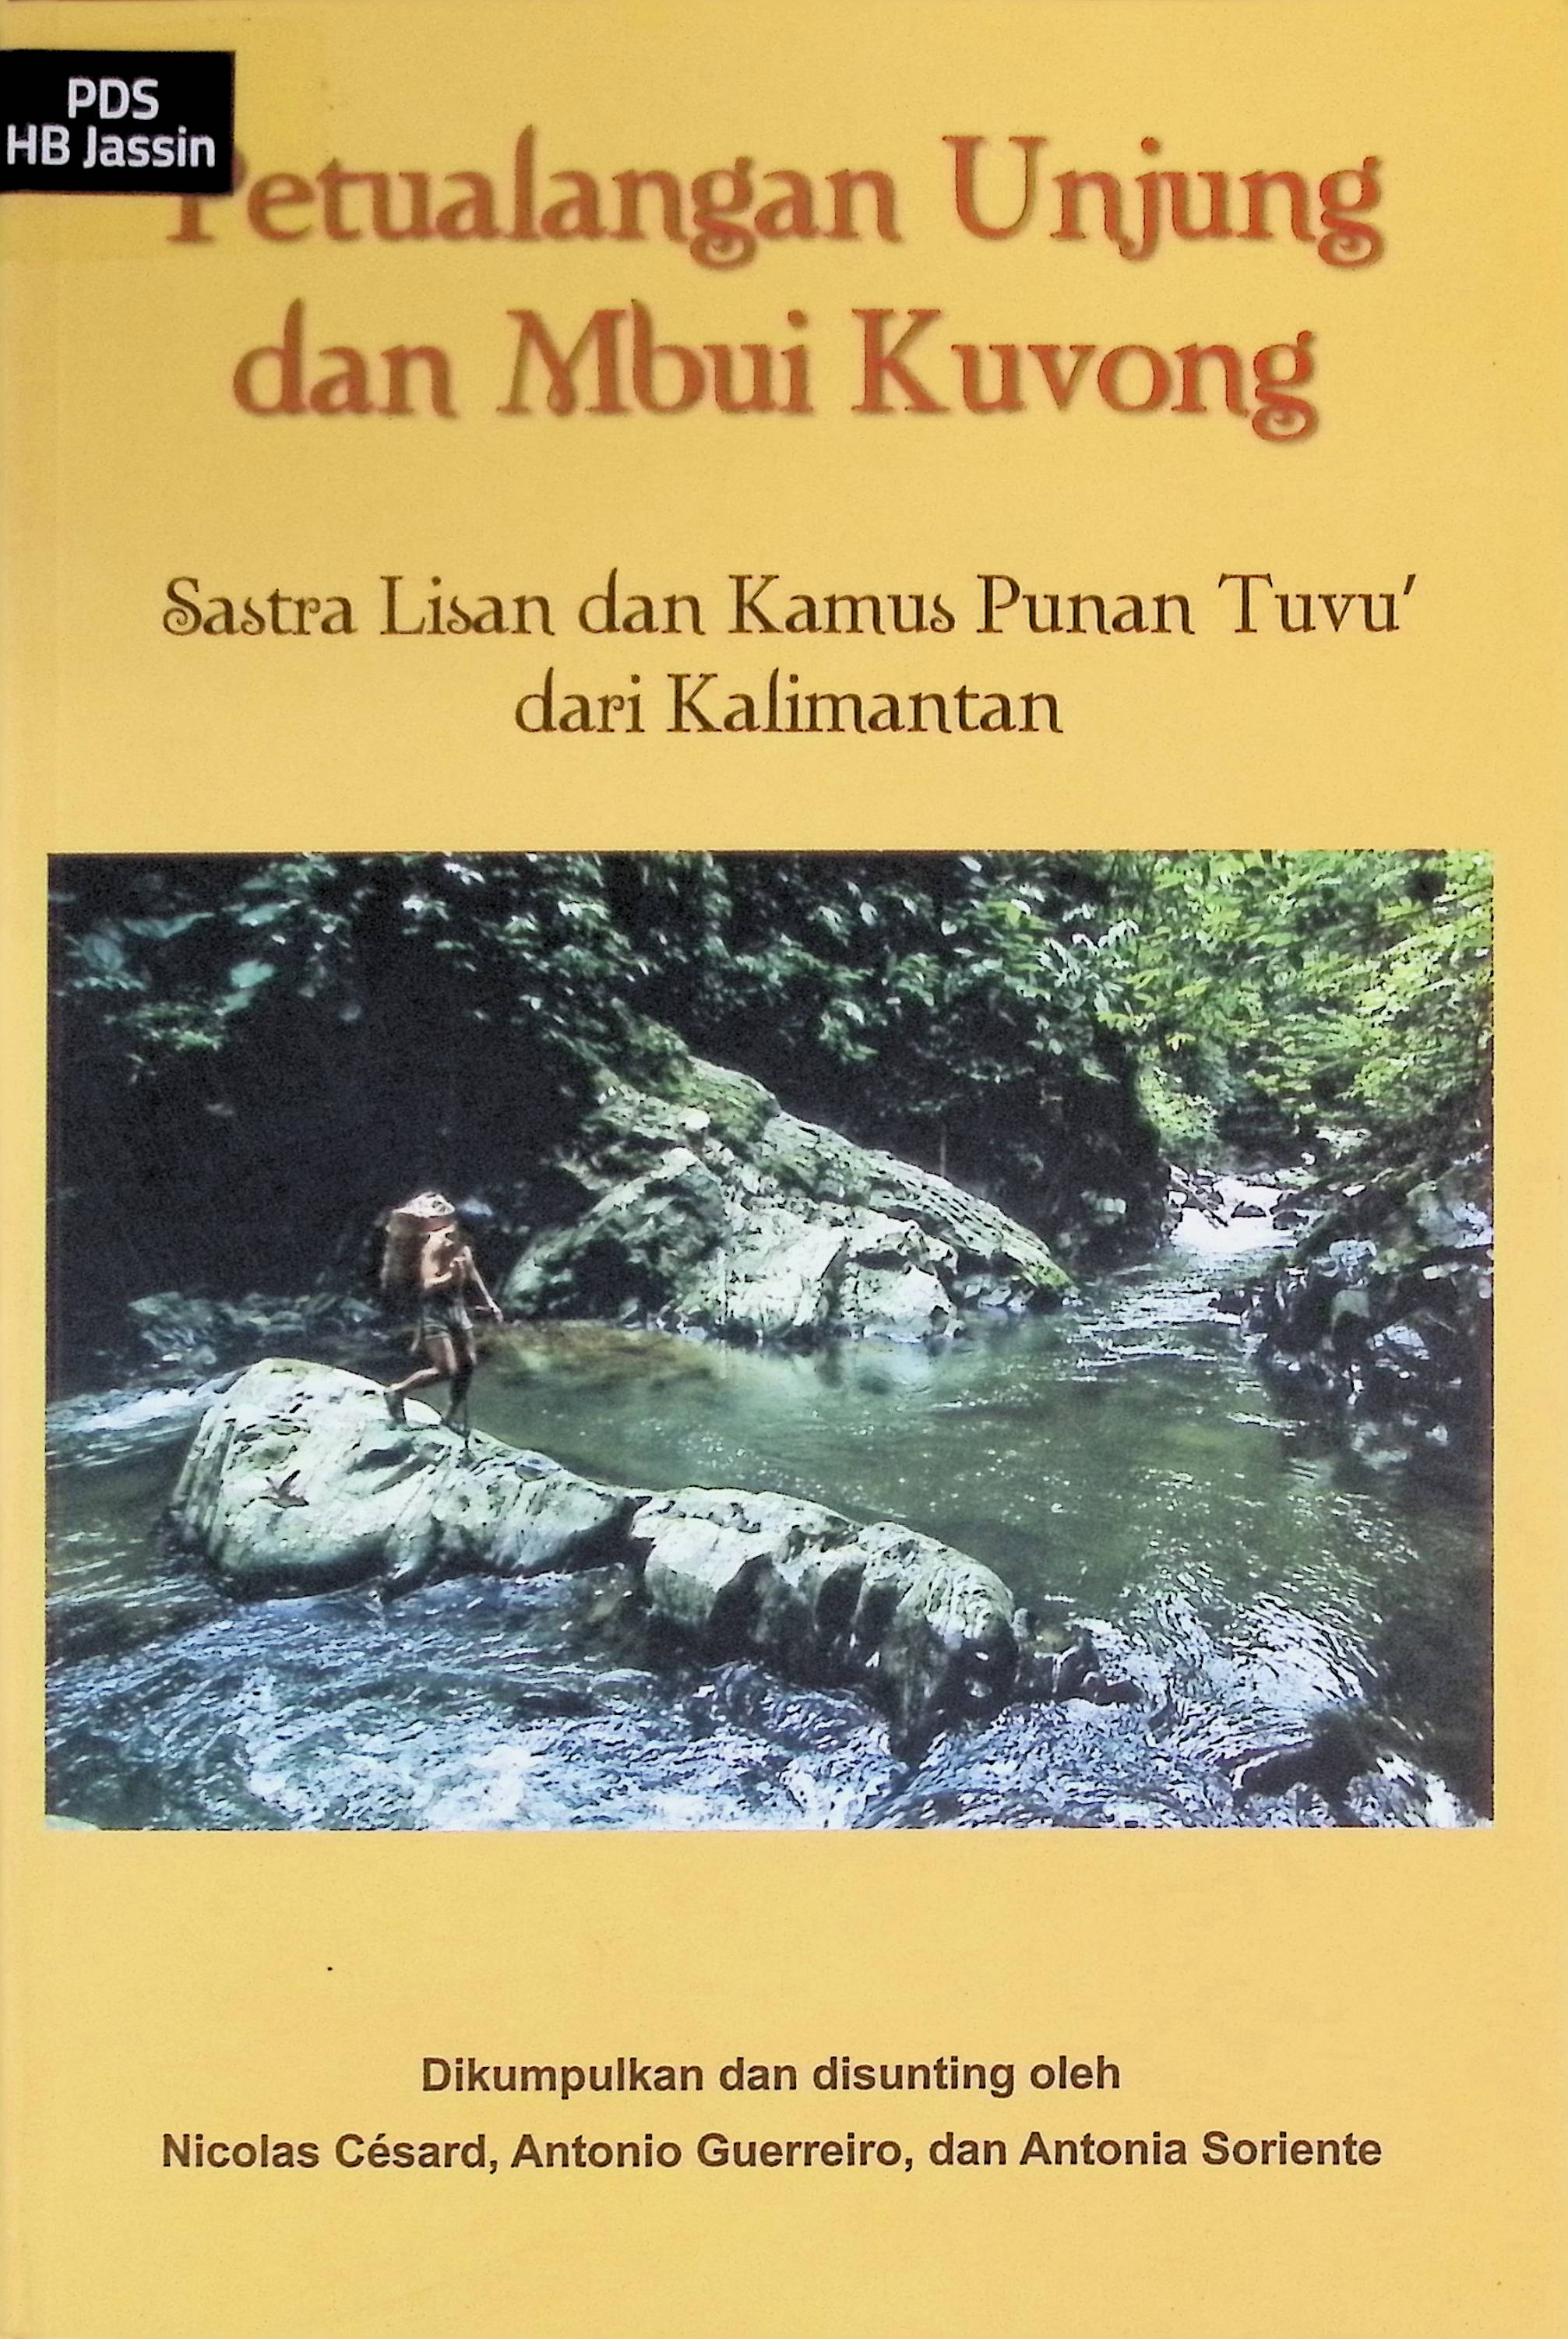 Petualangan Unjung dan Mbui Kuvong